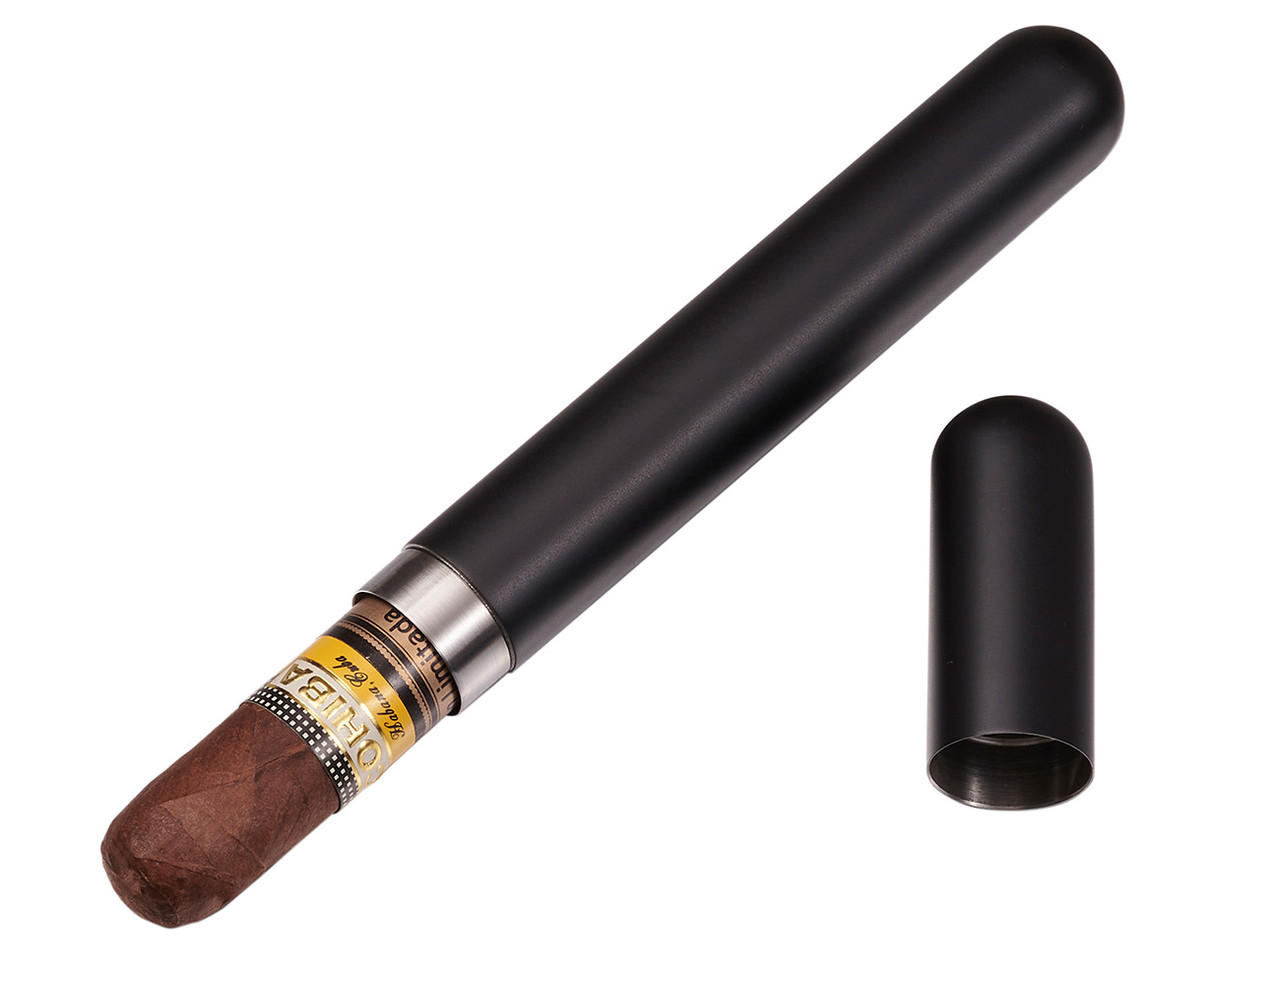 Visol Sigma Matte Black Finish Stainless Steel Cigar Tube - VCASE1003BK